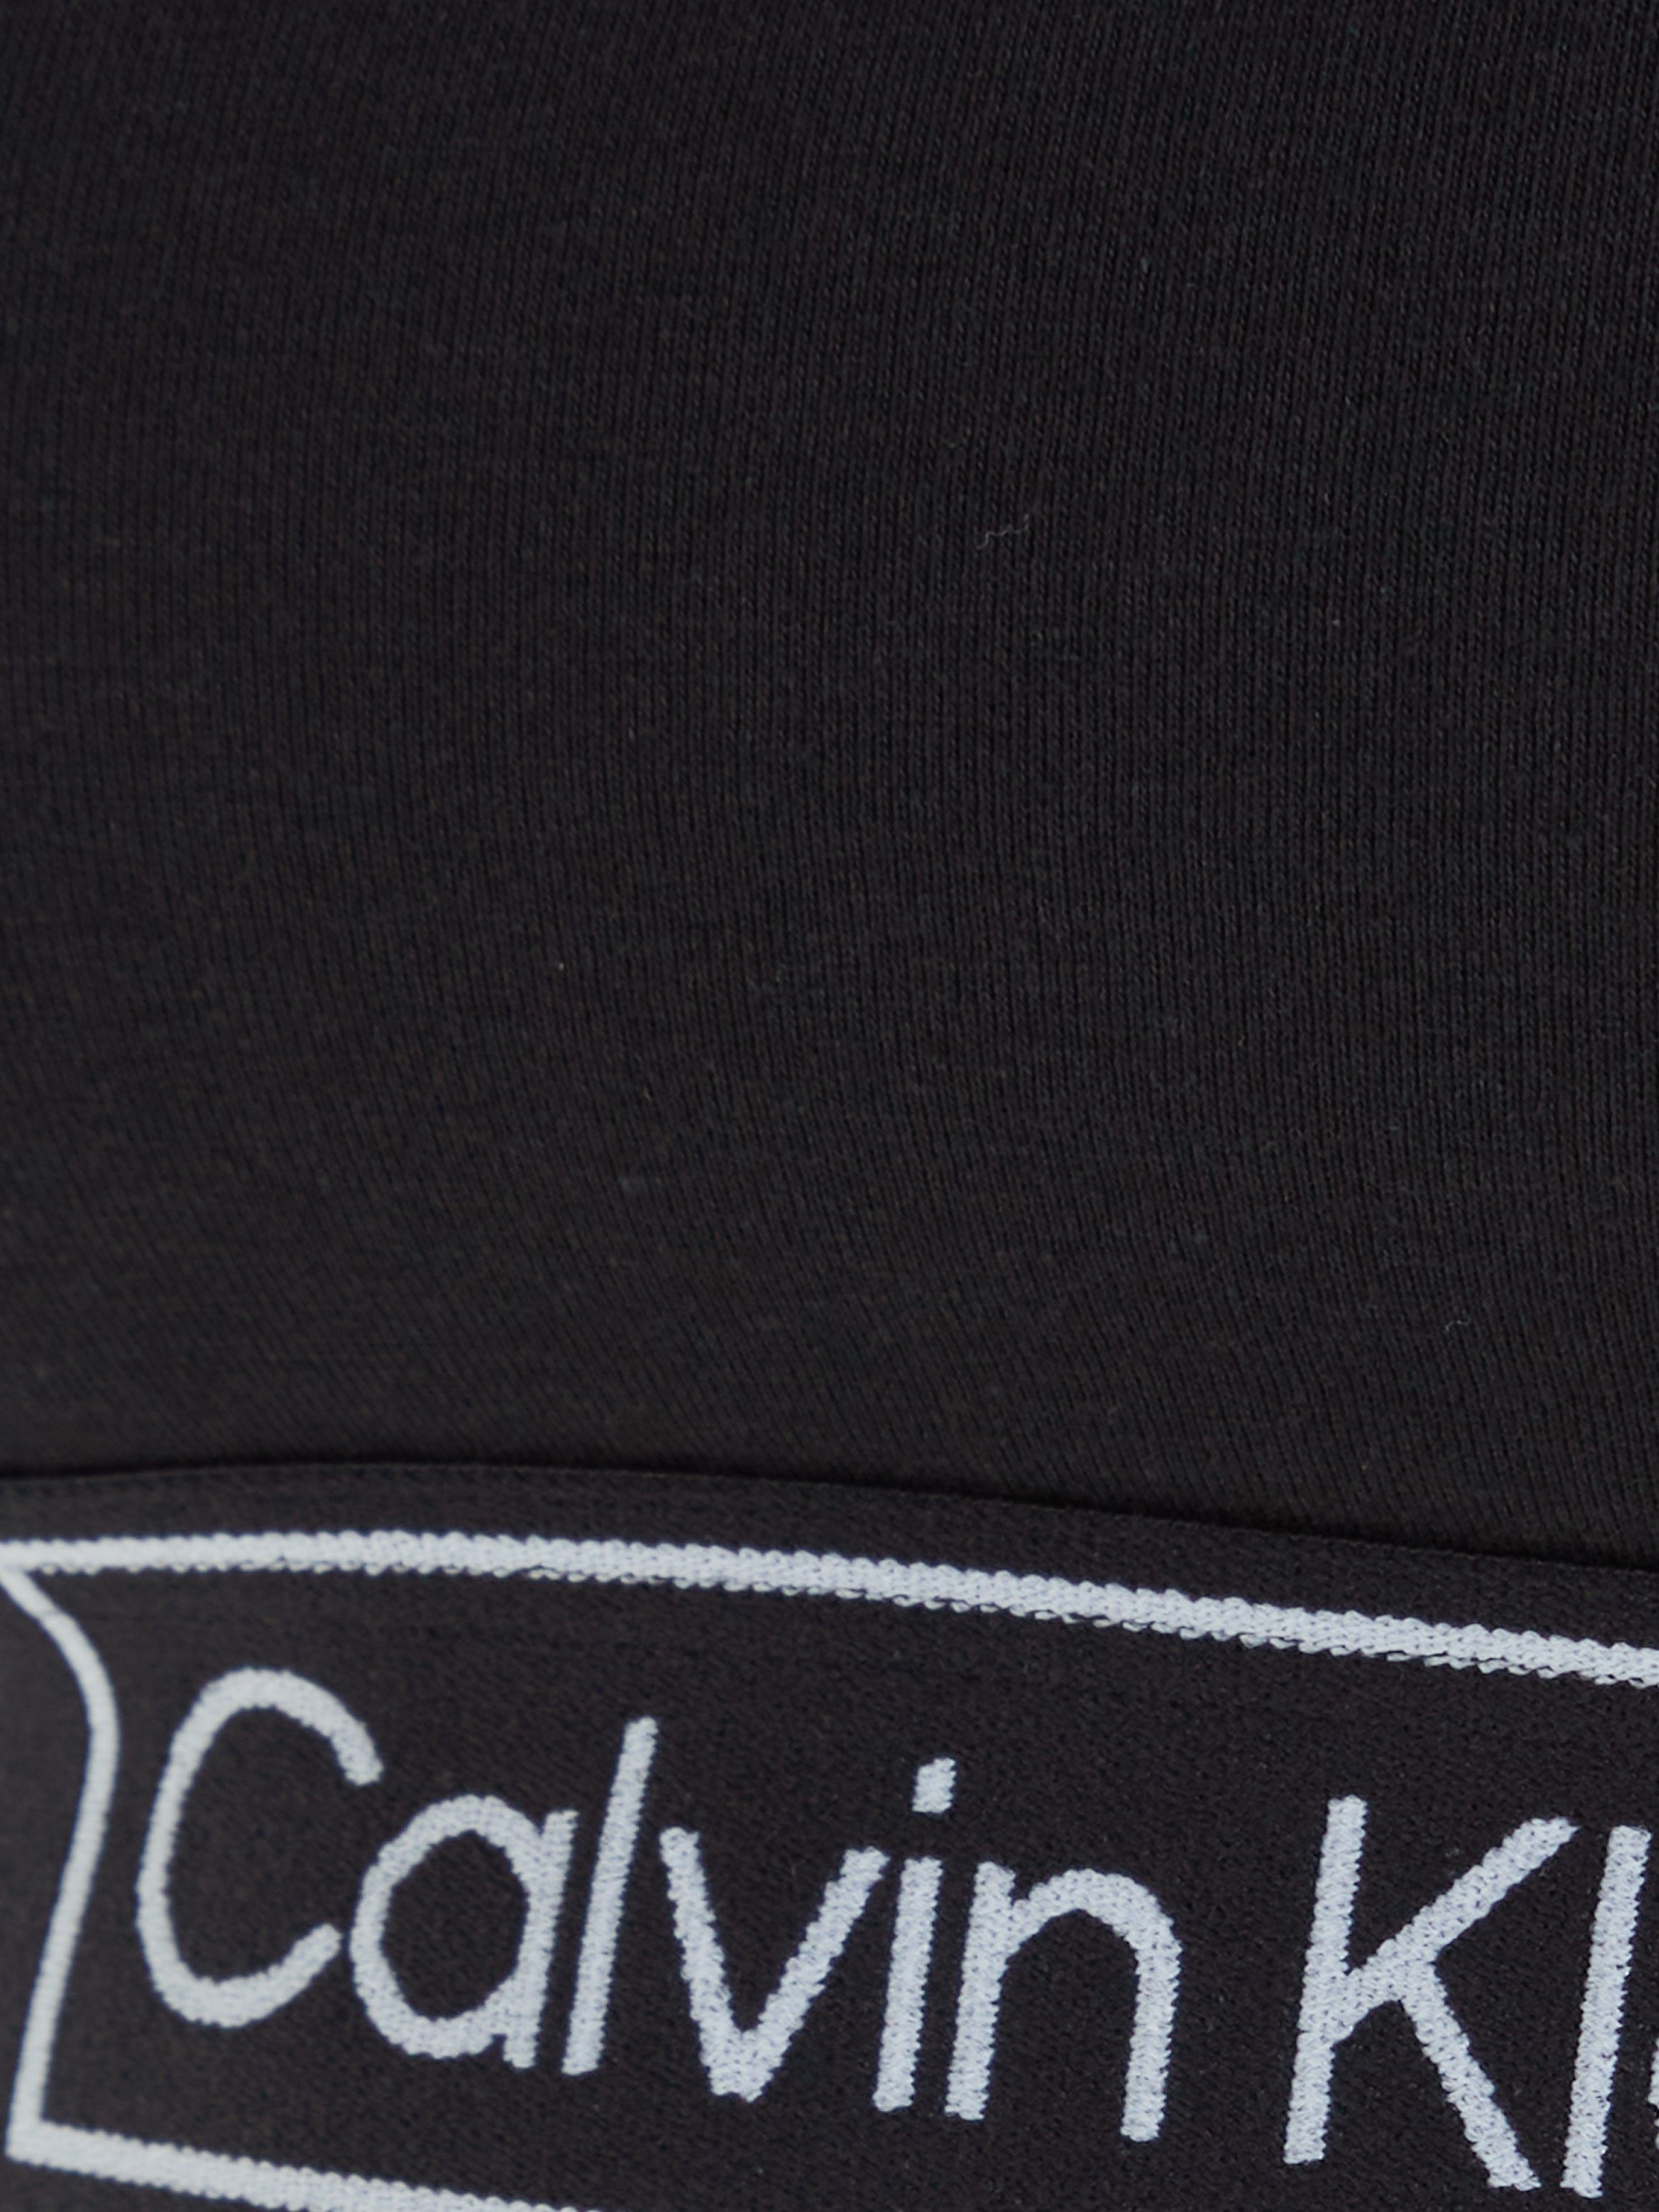 schwarz Klein Logoschriftzug mit Bustier Calvin Underwear